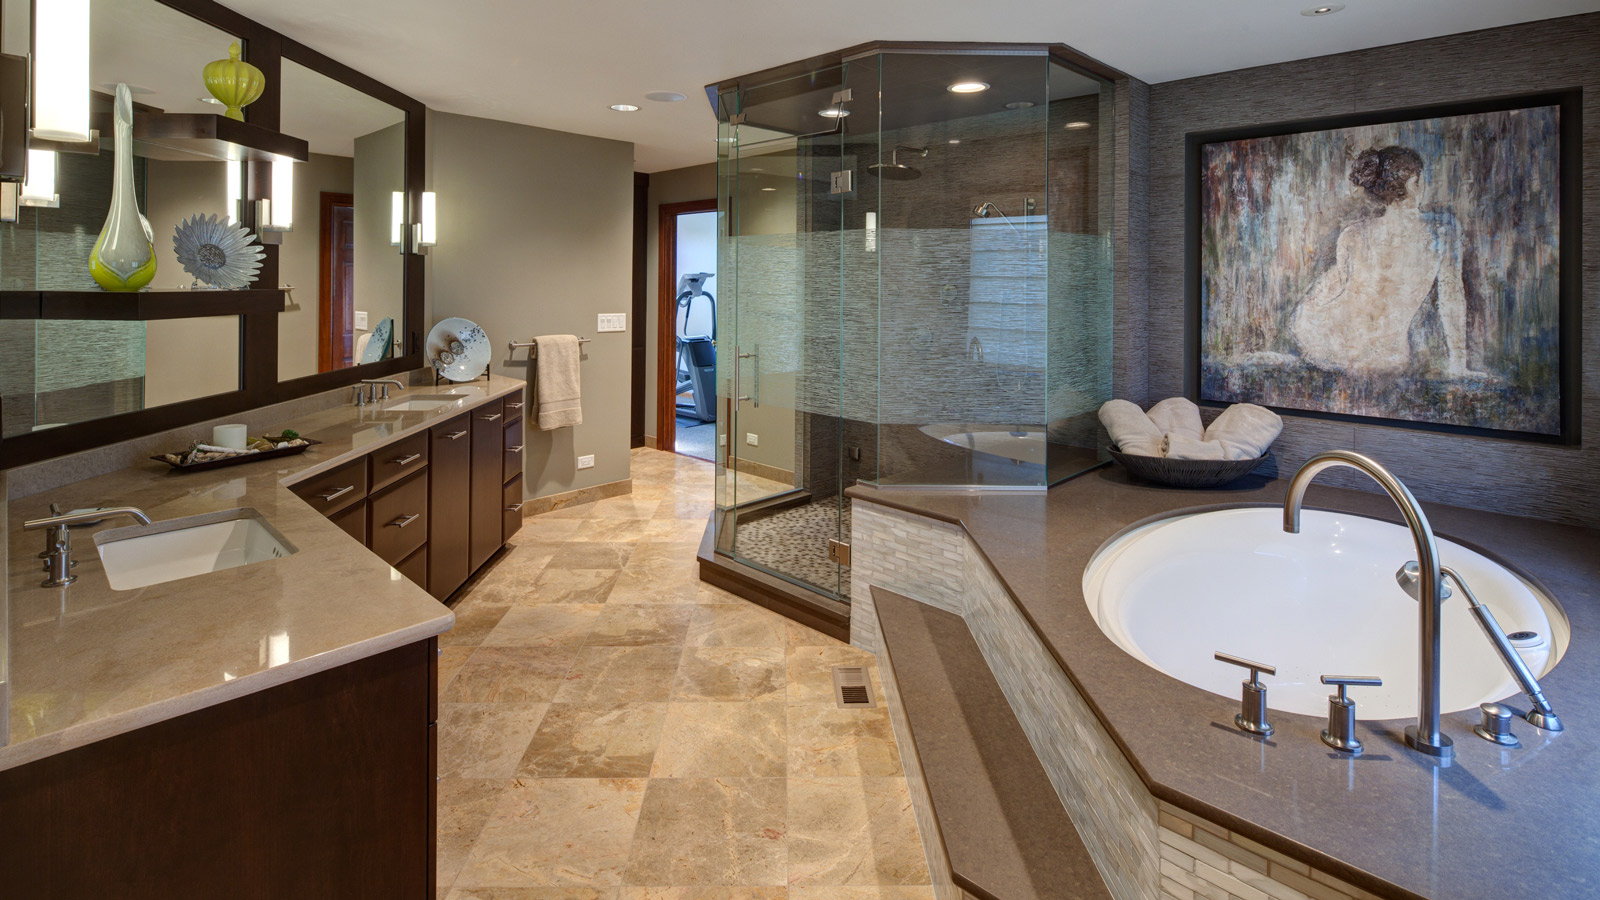 Masterful-Bathroom-Suite-drury-design